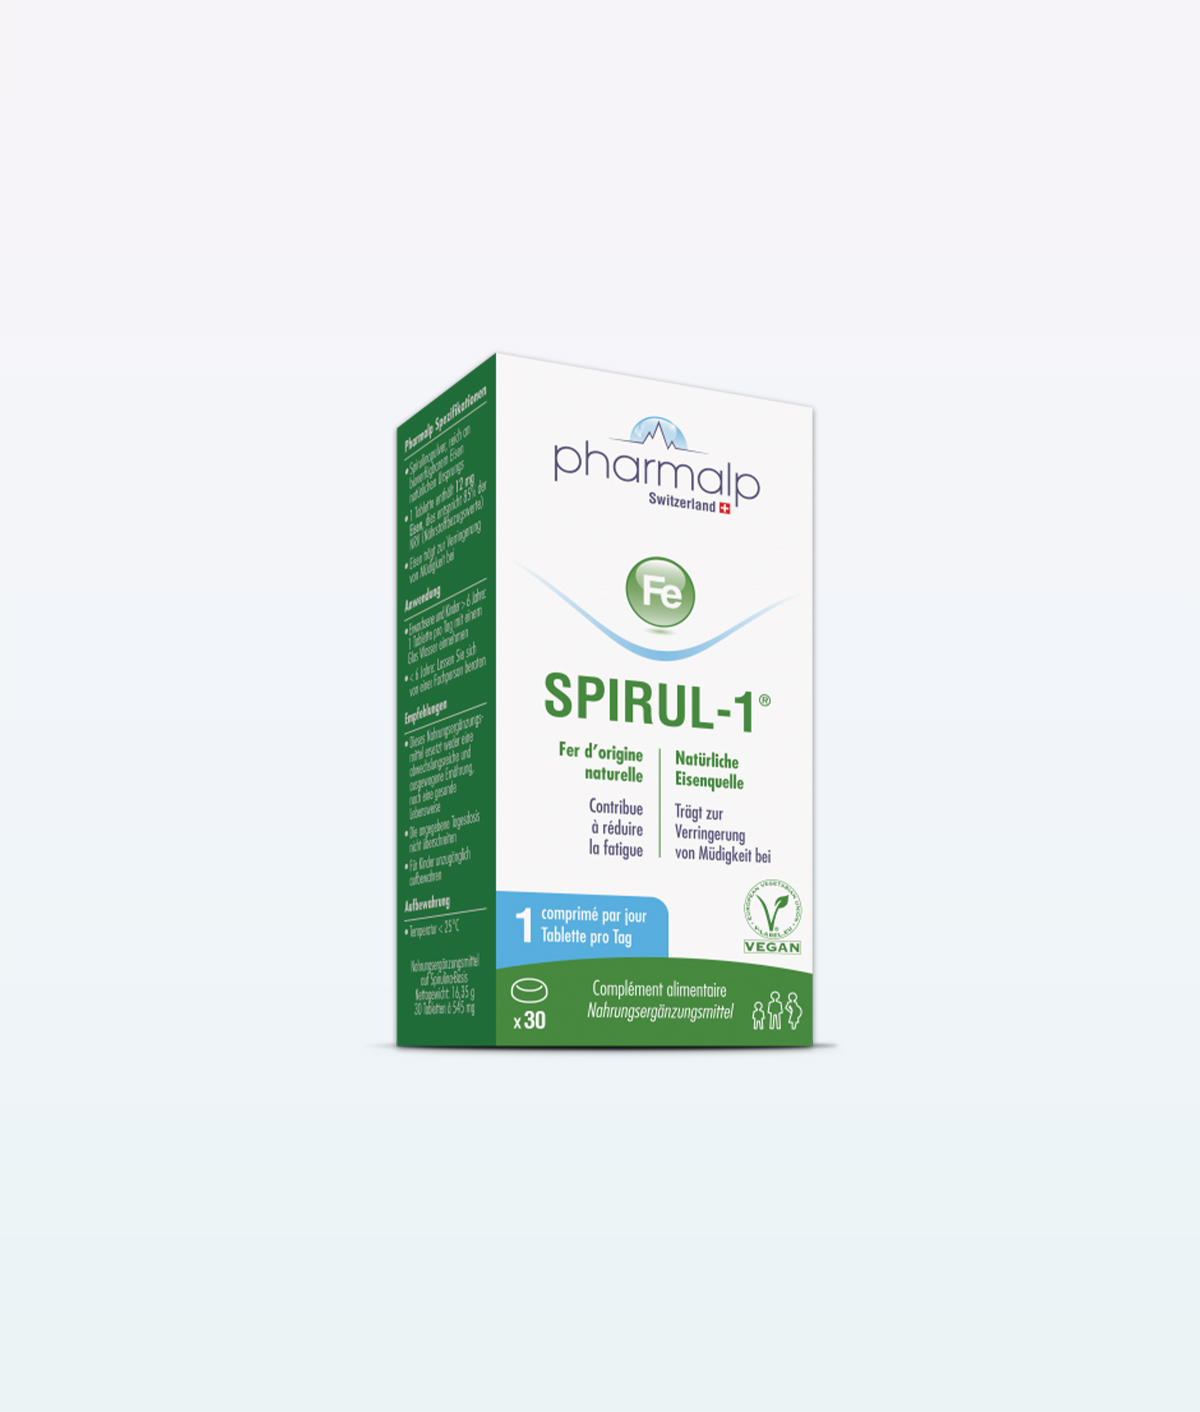 Pharmalp Spirul-1 Supplements, spirul 30 - Swiss Made Direct - pharmalp spirul-1 supplements, pharmalp supplements